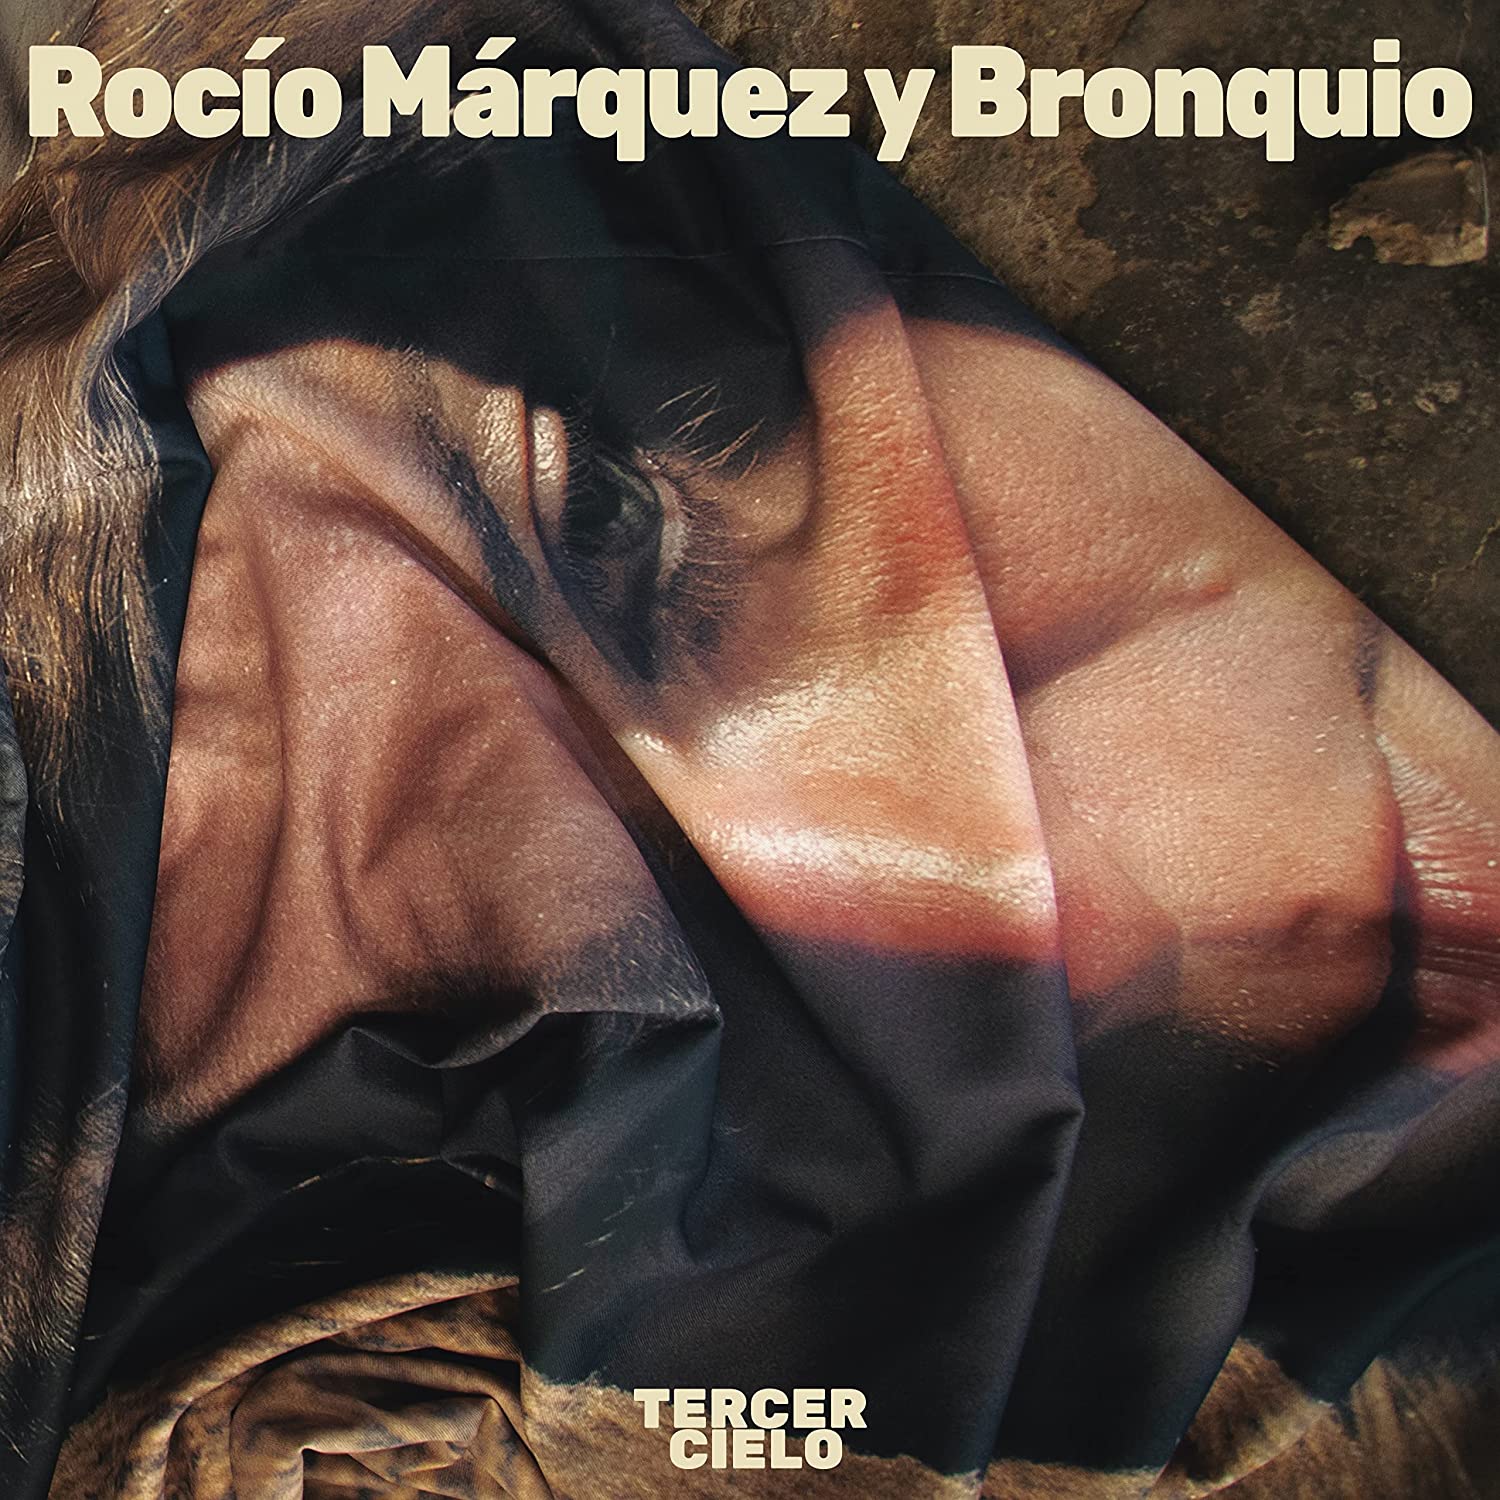 Rocío Márquez y Bronquio "Tercer Cielo" LP